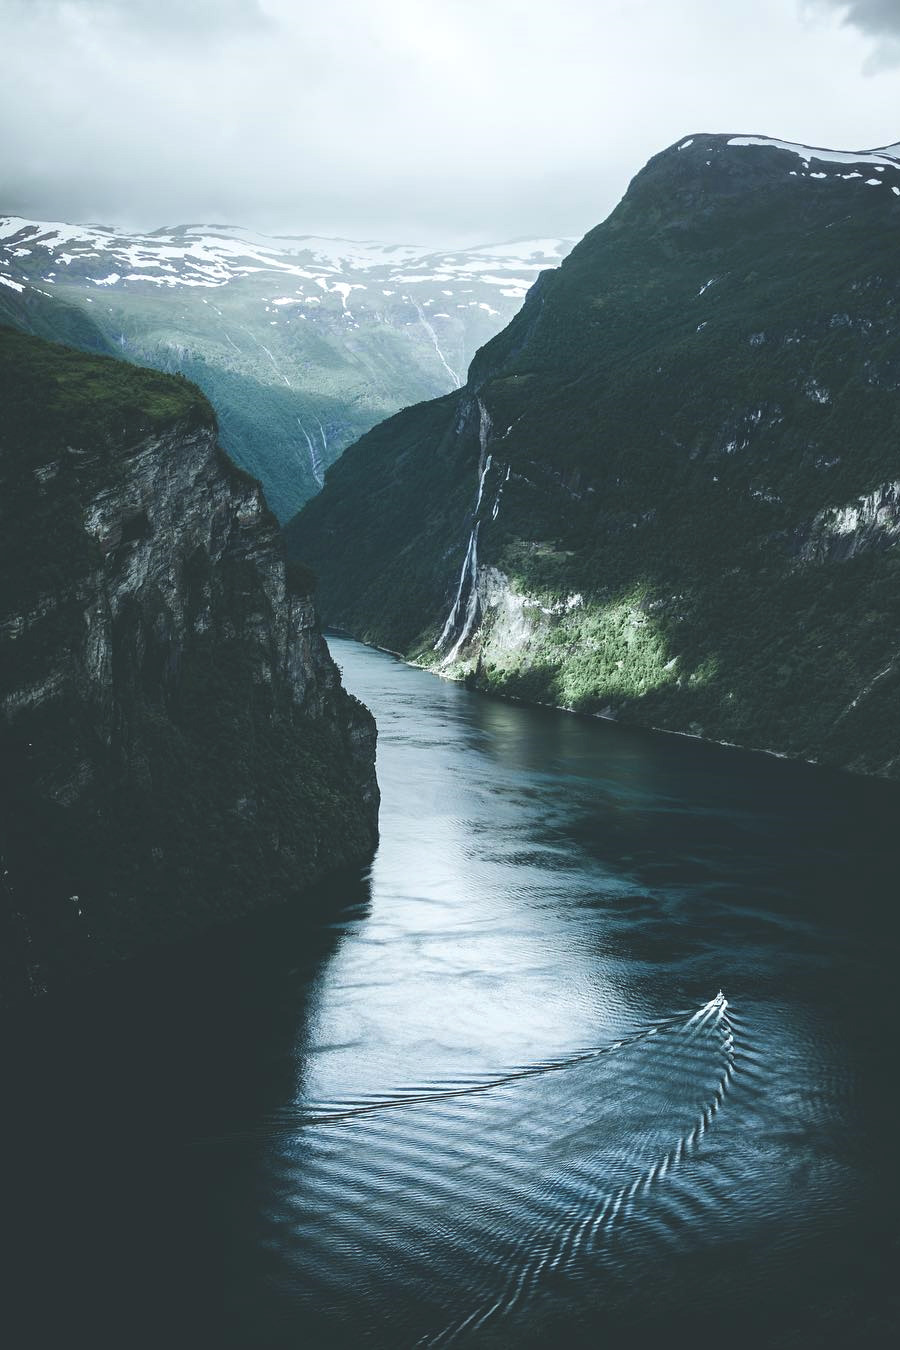 900x1350, 203 Kb / горы, озеро, лодка, катер, фьорд, Норвегия, водопад